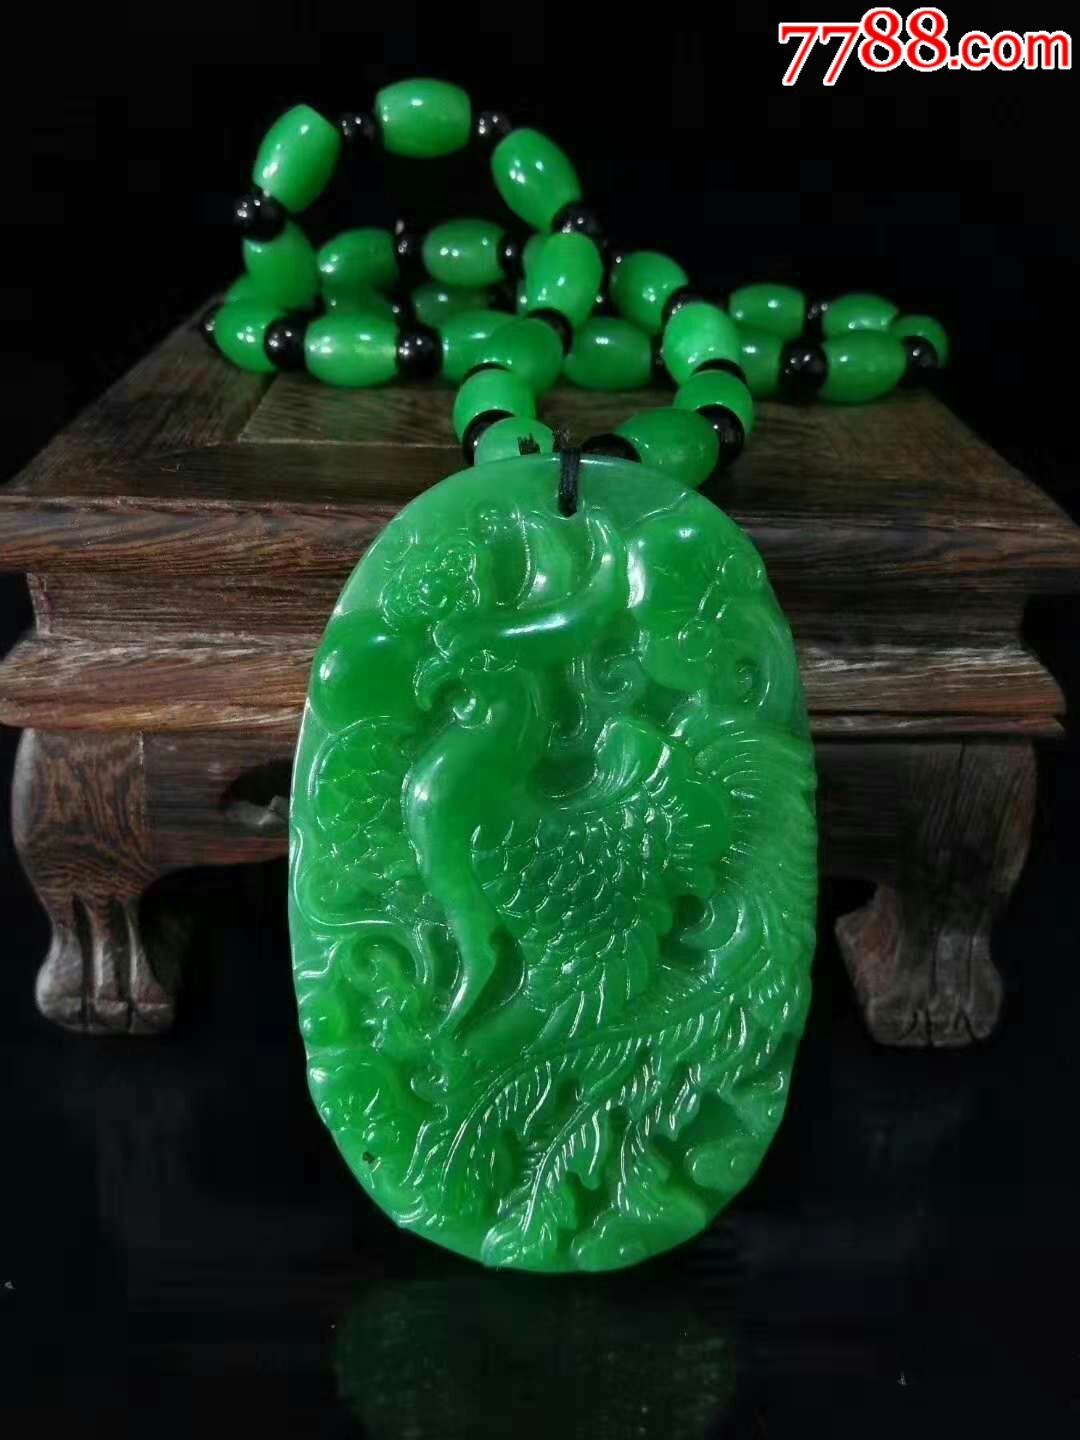 天然缅甸老翡翠帝王绿精品雕刻牌子挂件,翠质通透油润,种水足,保存